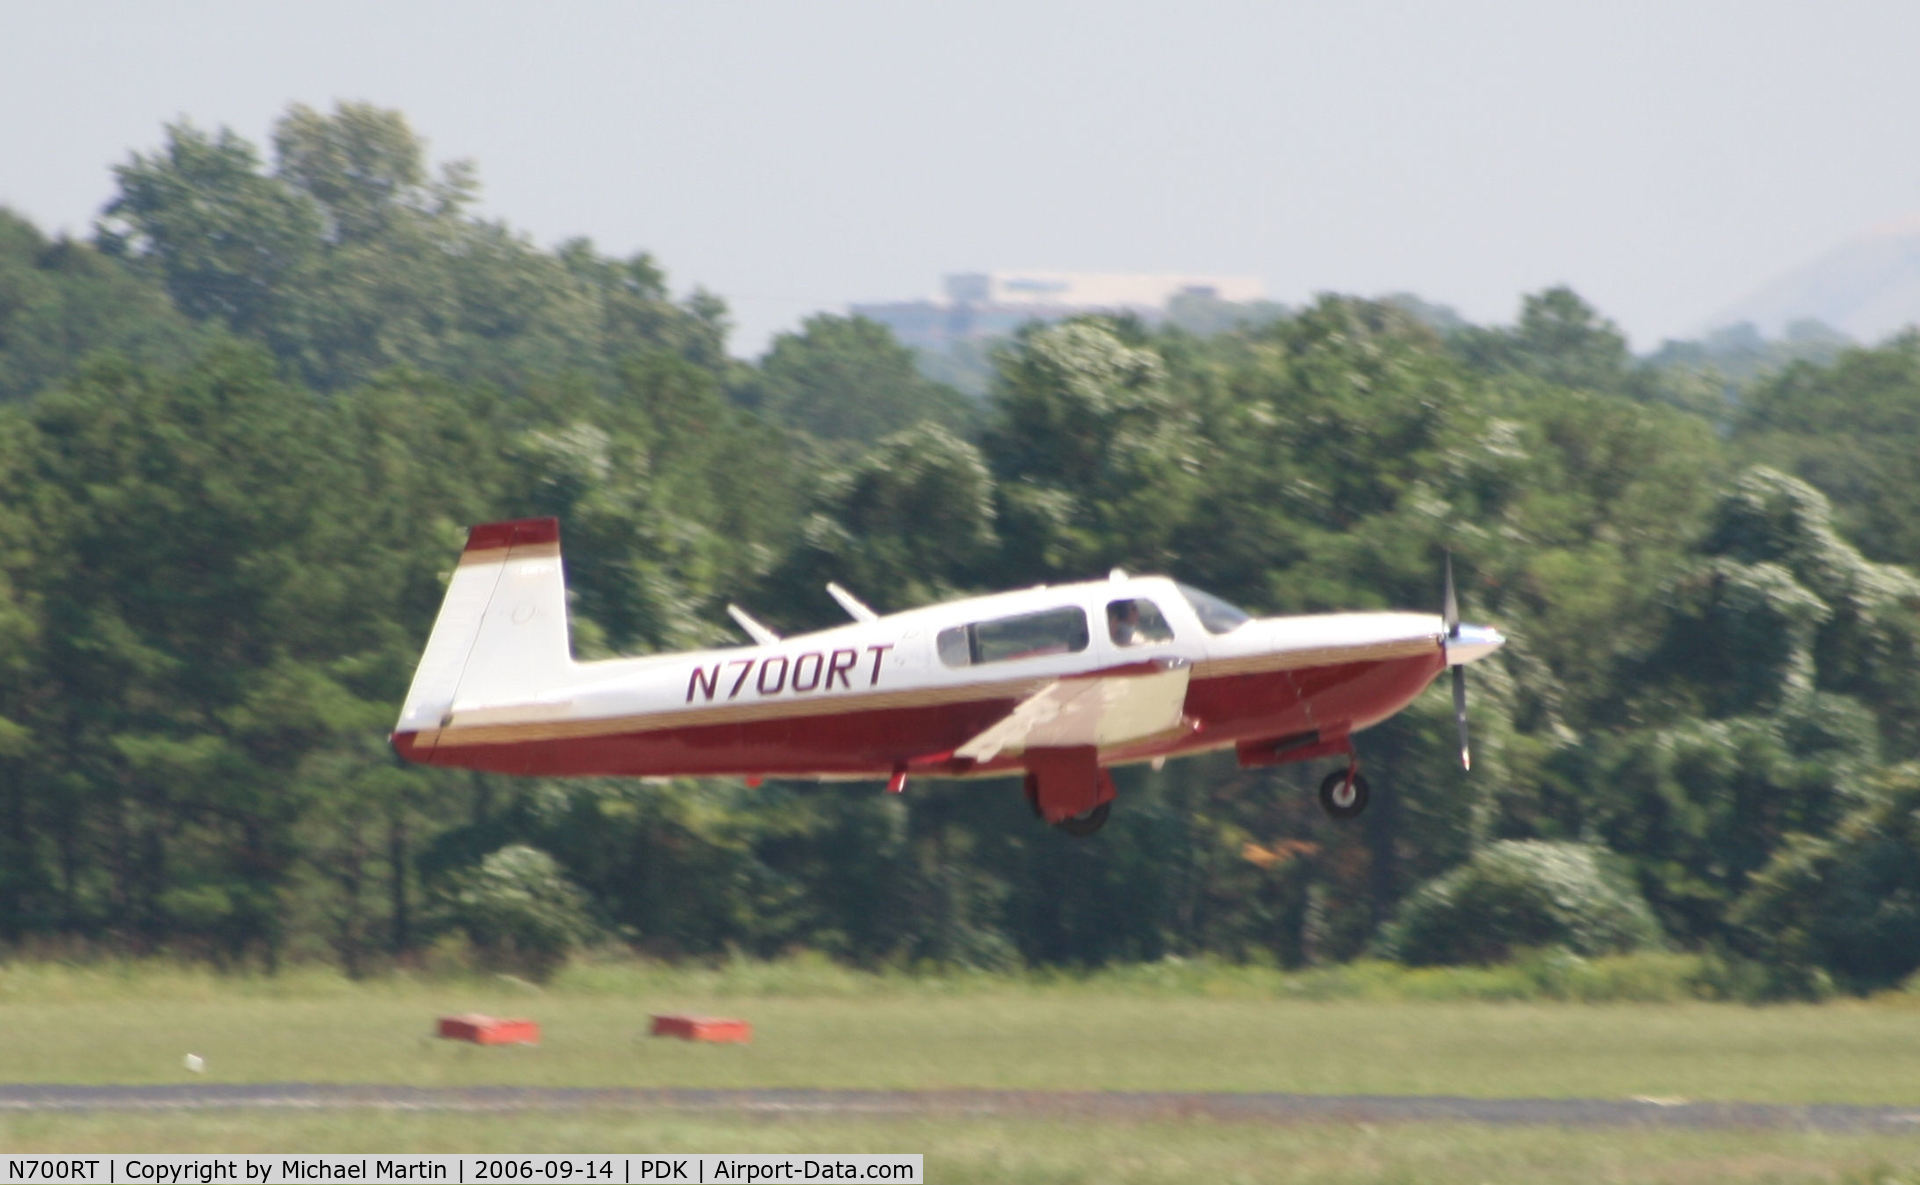 N700RT, 1996 Mooney M20R Ovation C/N 29-0097, Departing Runway 20R